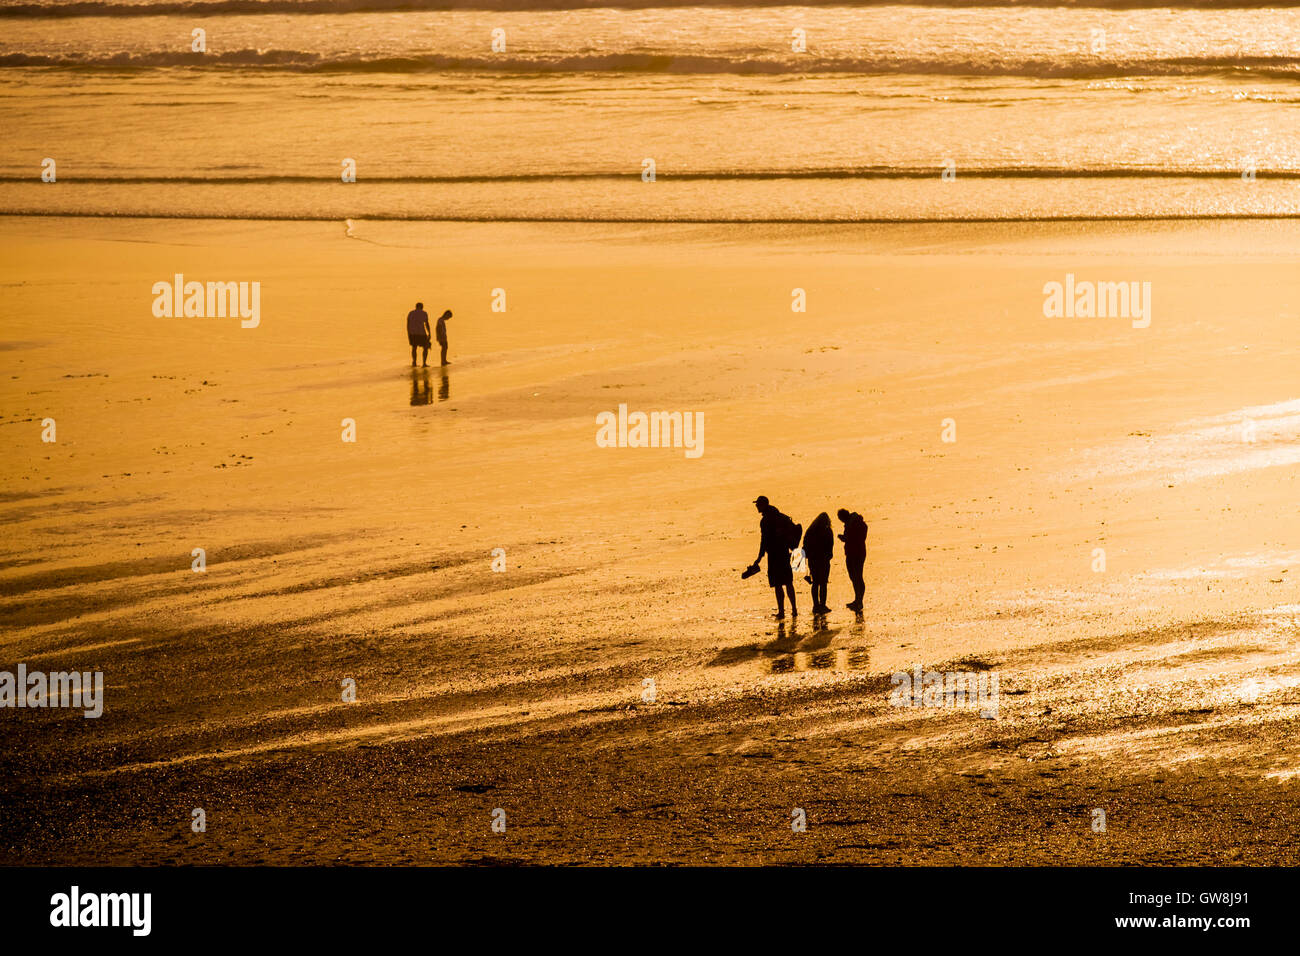 Les gens vu en silhouette lors d'un coucher de soleil intense. . Fistral Cornwall. Banque D'Images